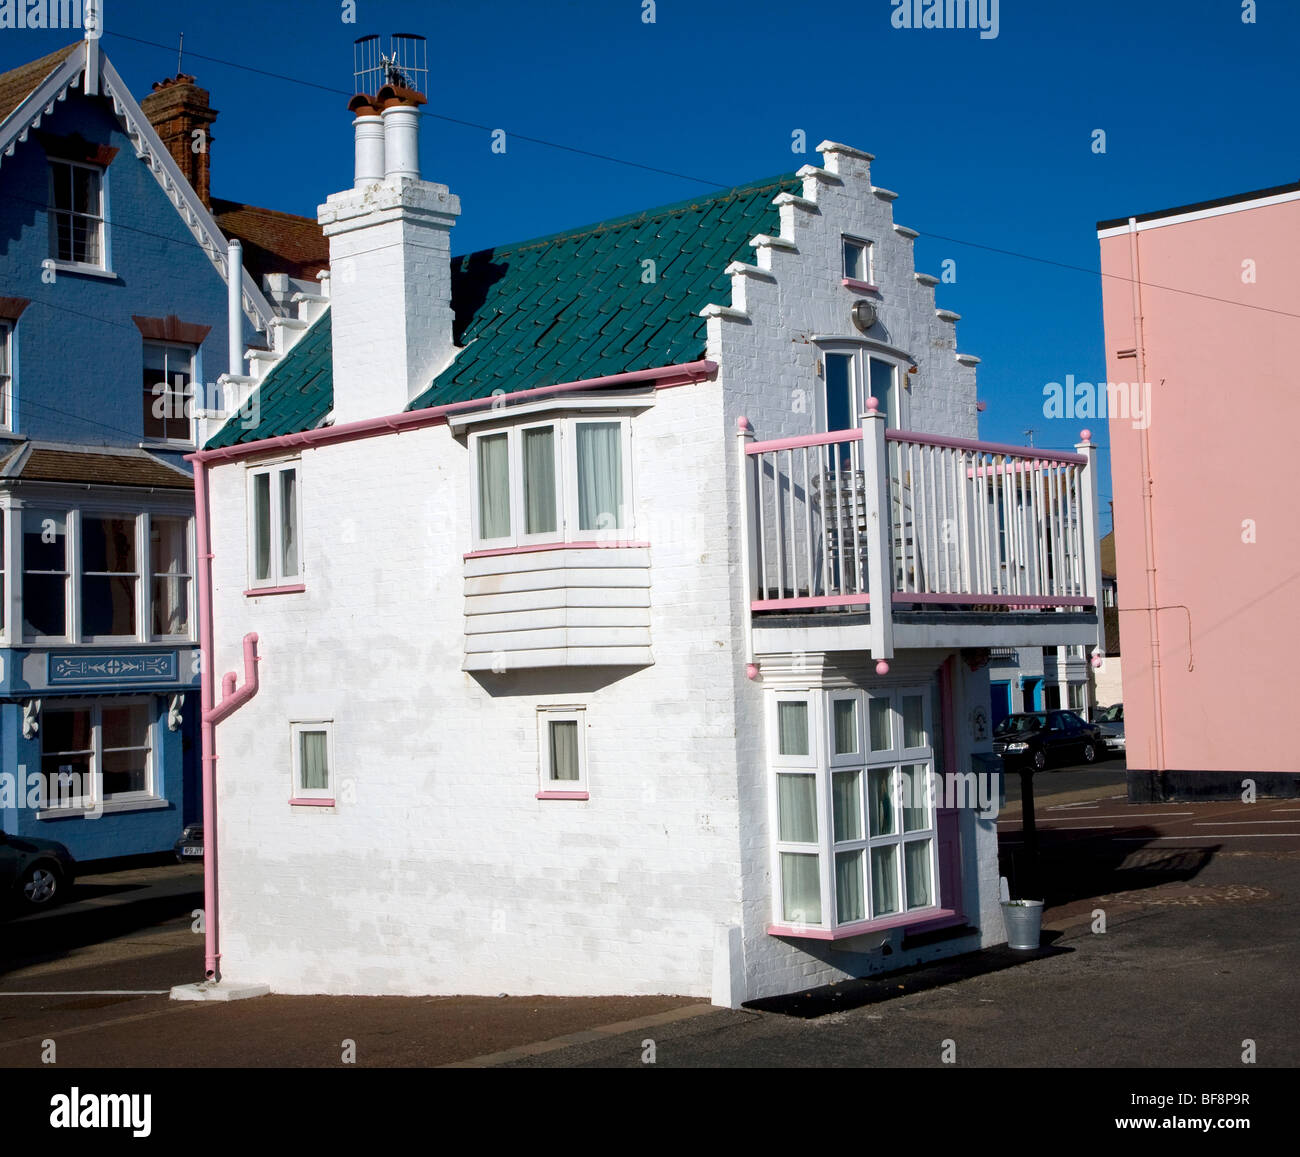 Fantasia, une miniature house sur le front, Aldeburgh, Suffolk, Angleterre Banque D'Images